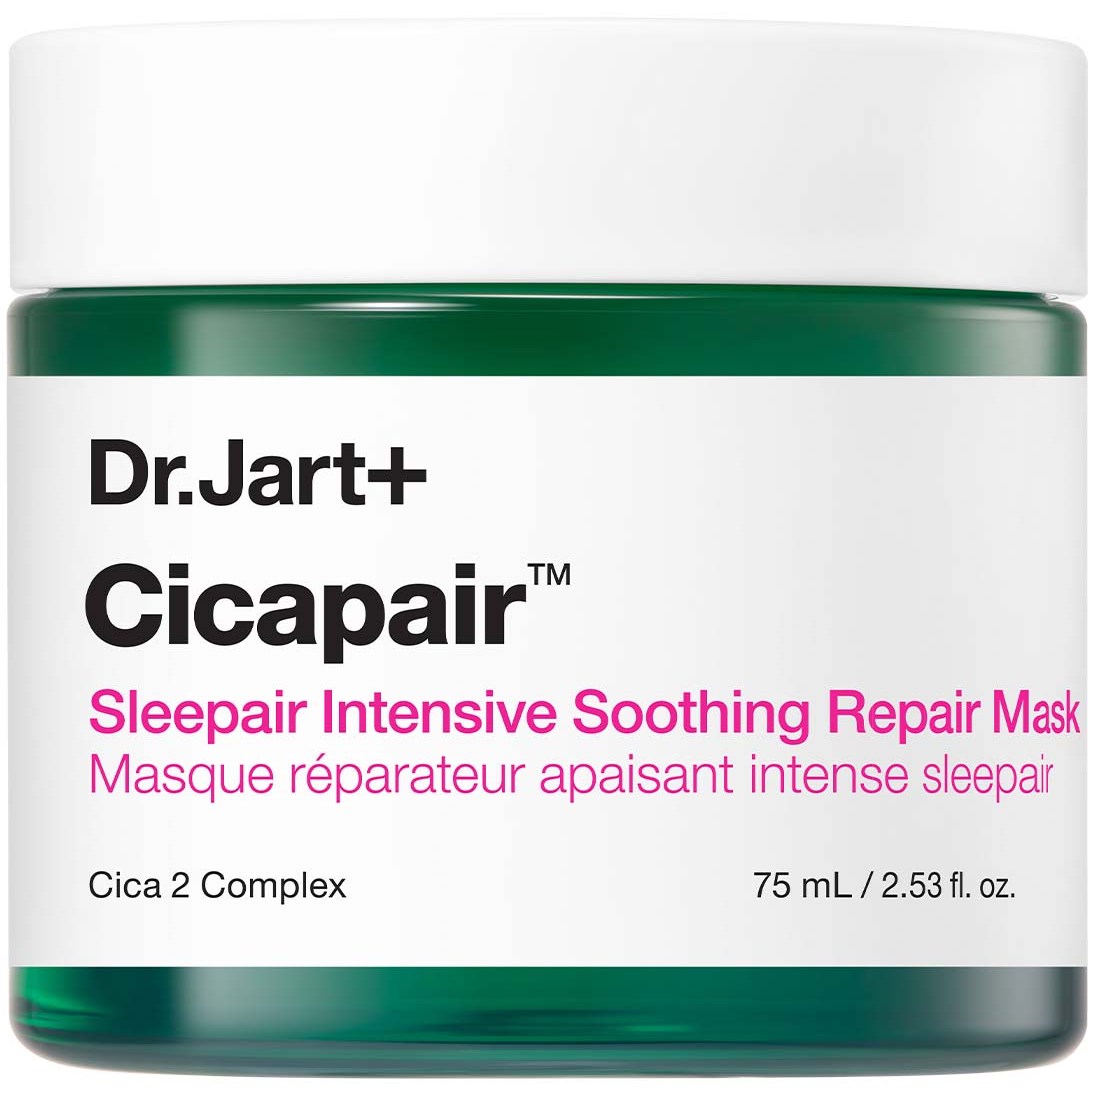 Bilde av Dr.jart+ Cicapair Sleepair Intensive Soothing Repair Mask 75 Ml